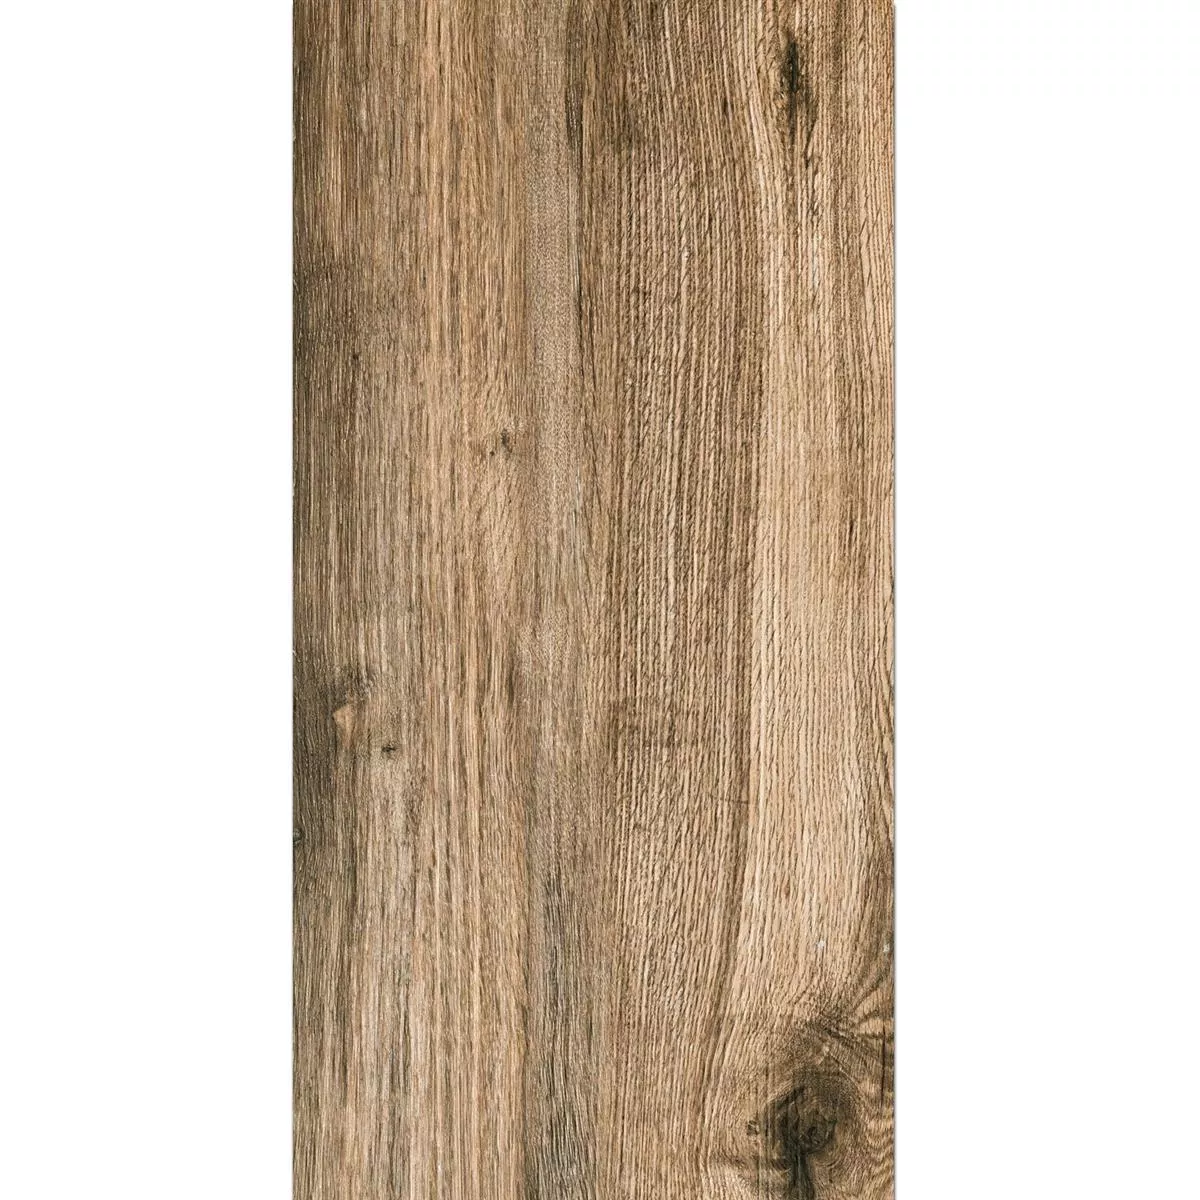 Tерасовидни Плочи Starwood Bид Hа Дърво Oak 45x90cm